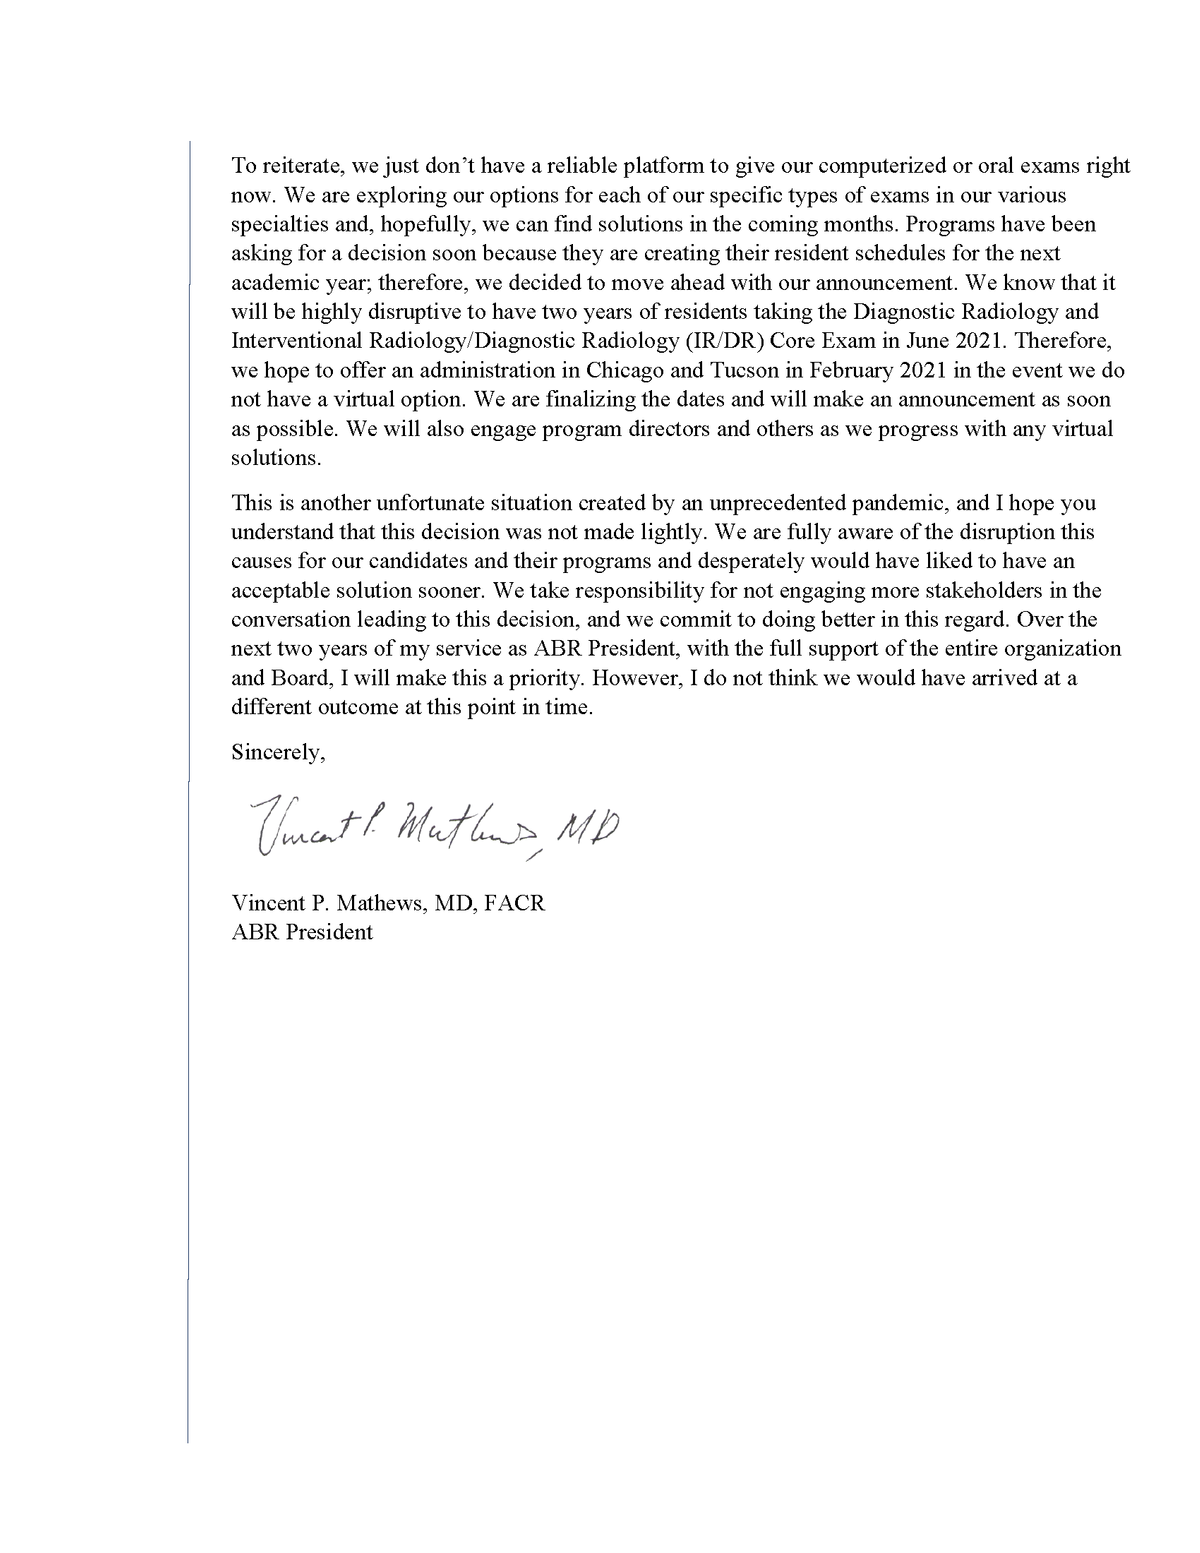 Dr. Mathews Letter page 2